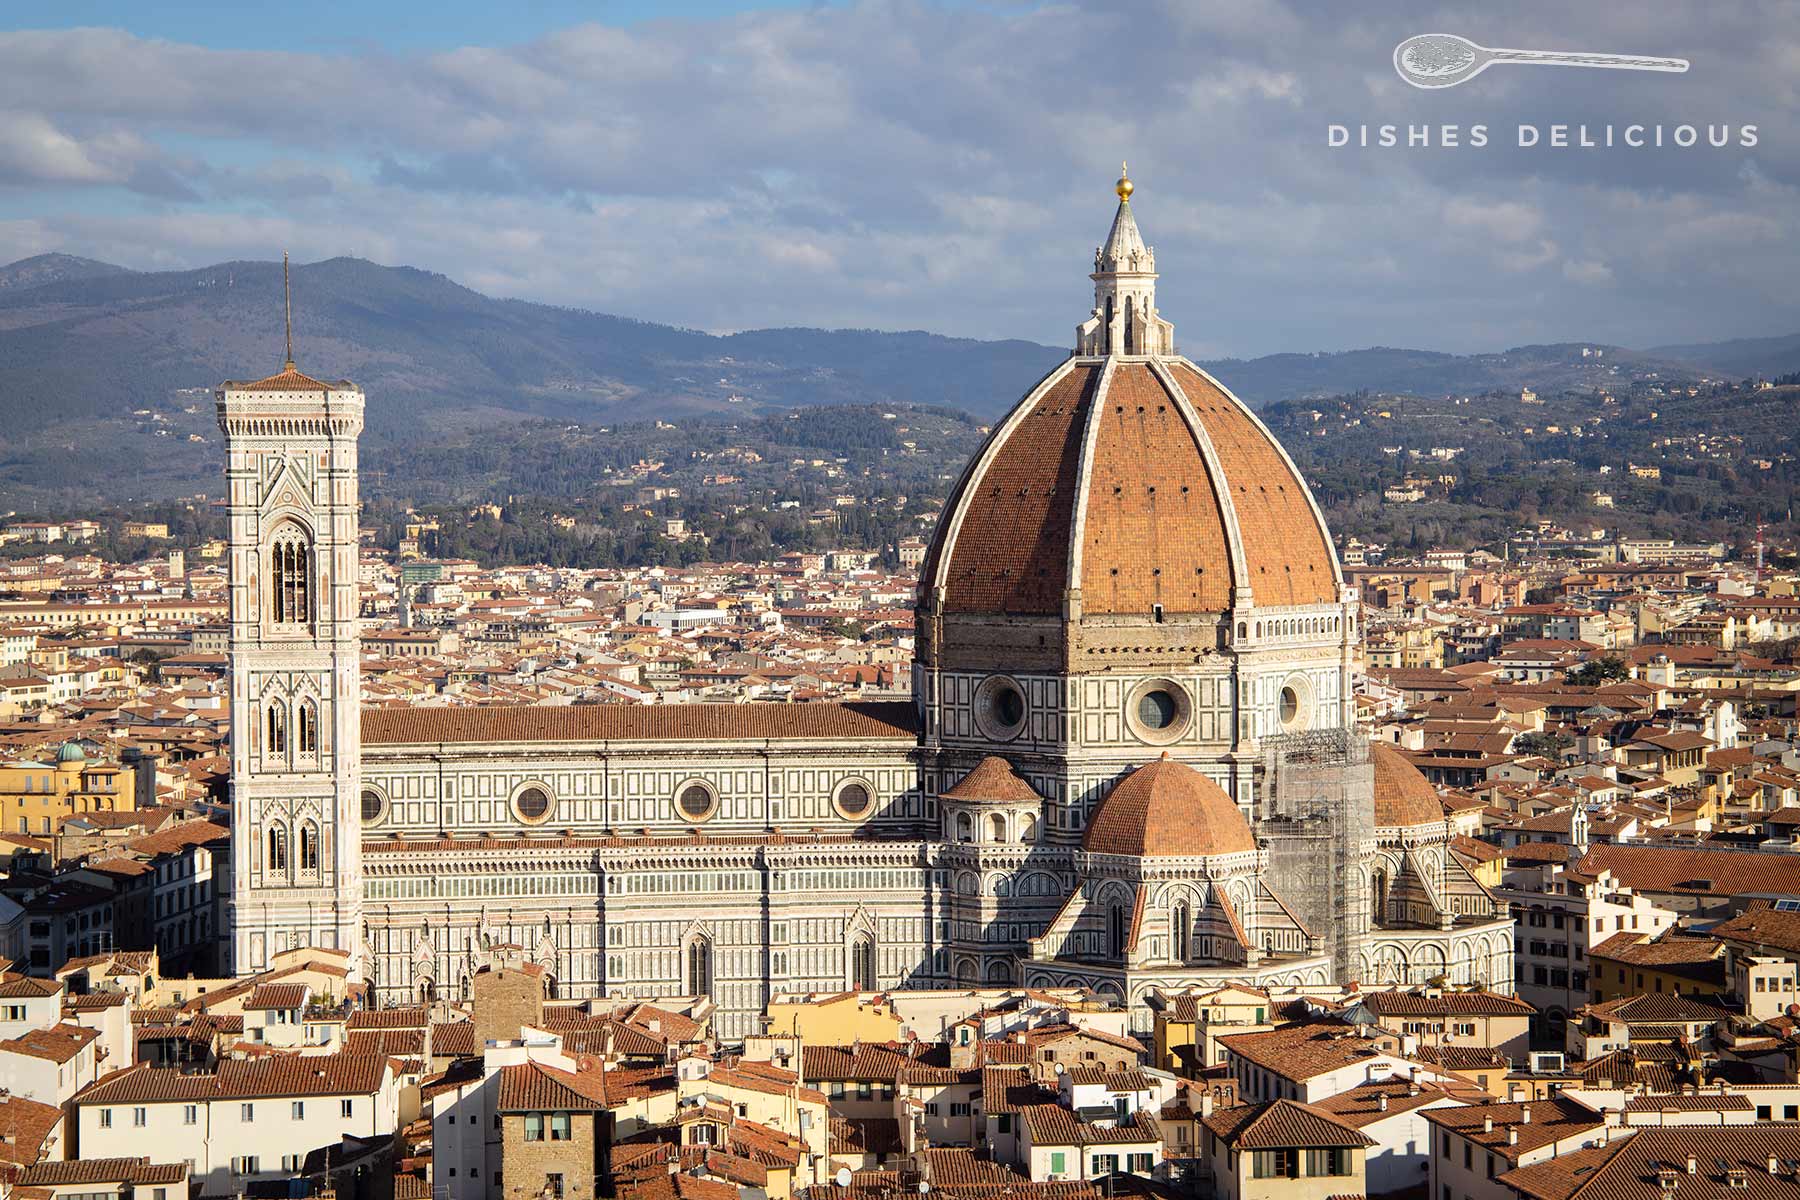 Der Dom von Florenz - eine der größten Sehenswürdigkeiten der Stadt.